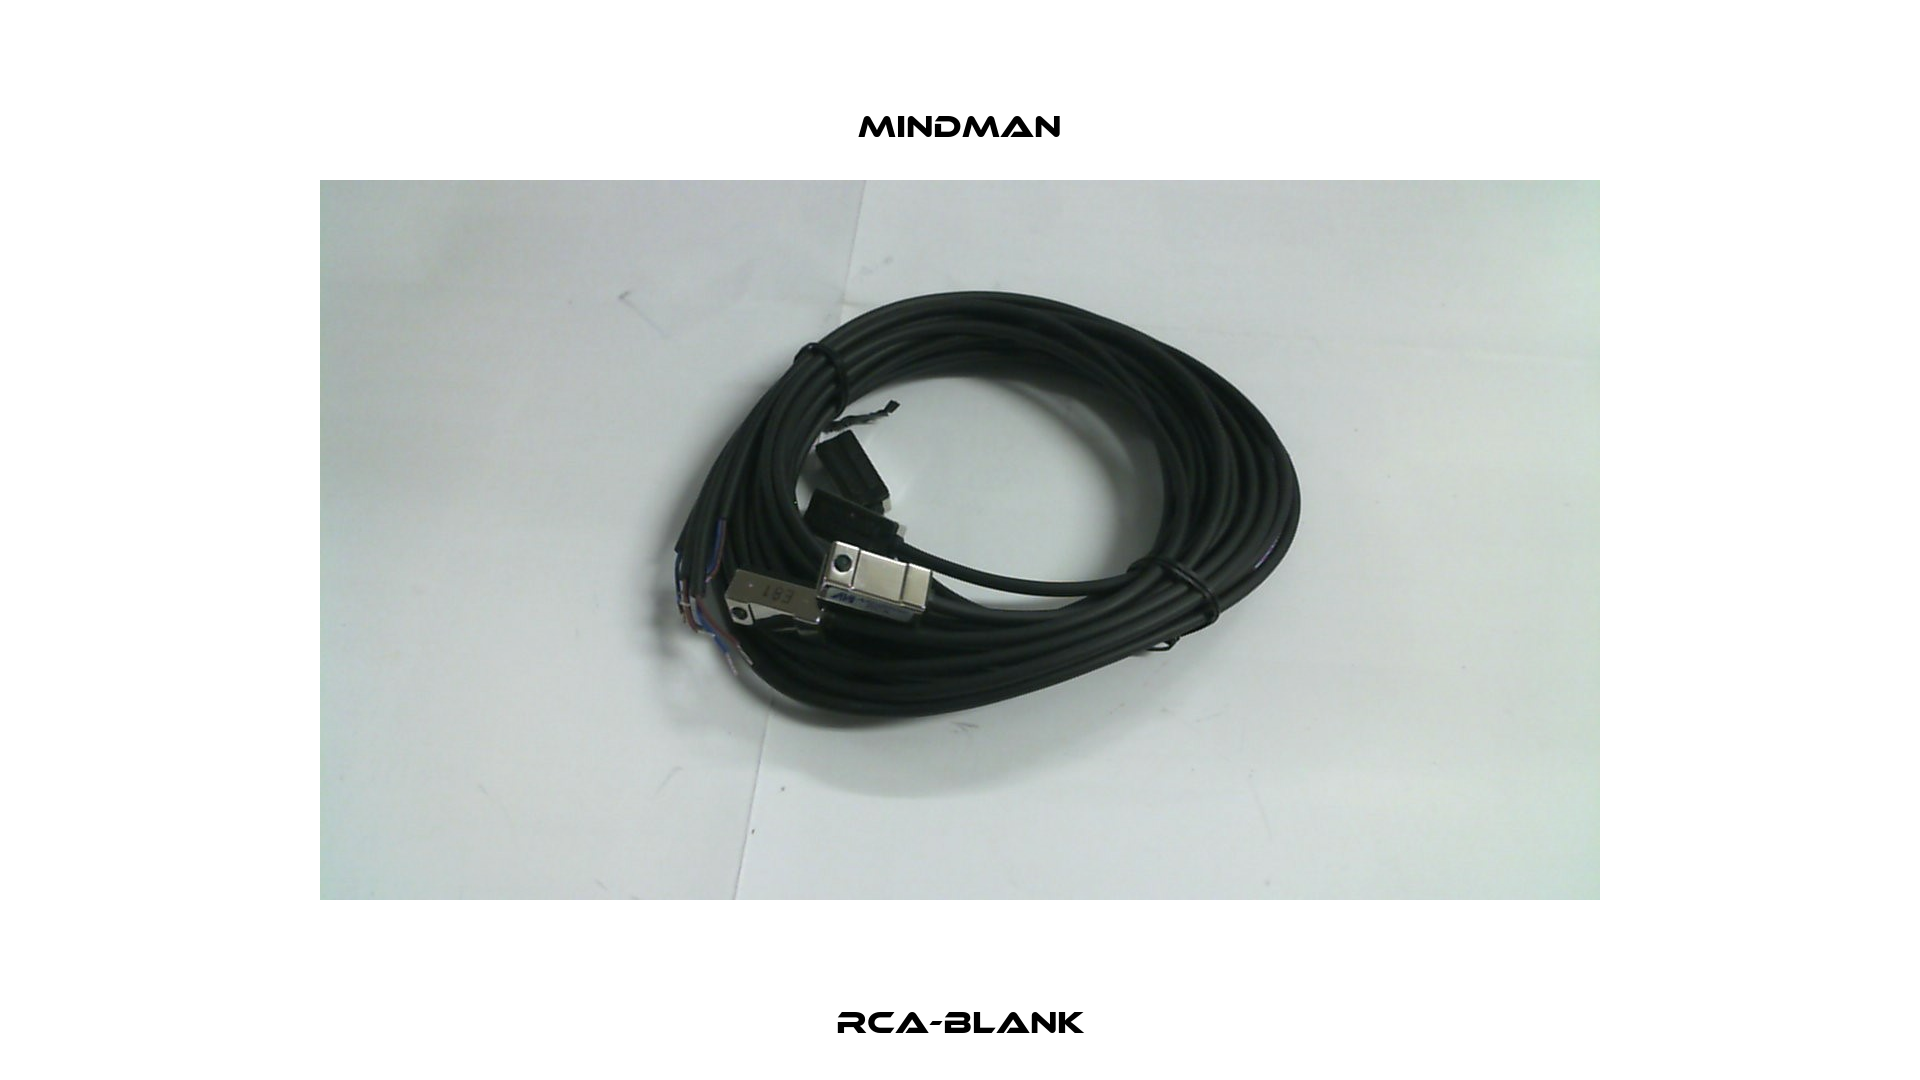 RCA-BLANK Mindman